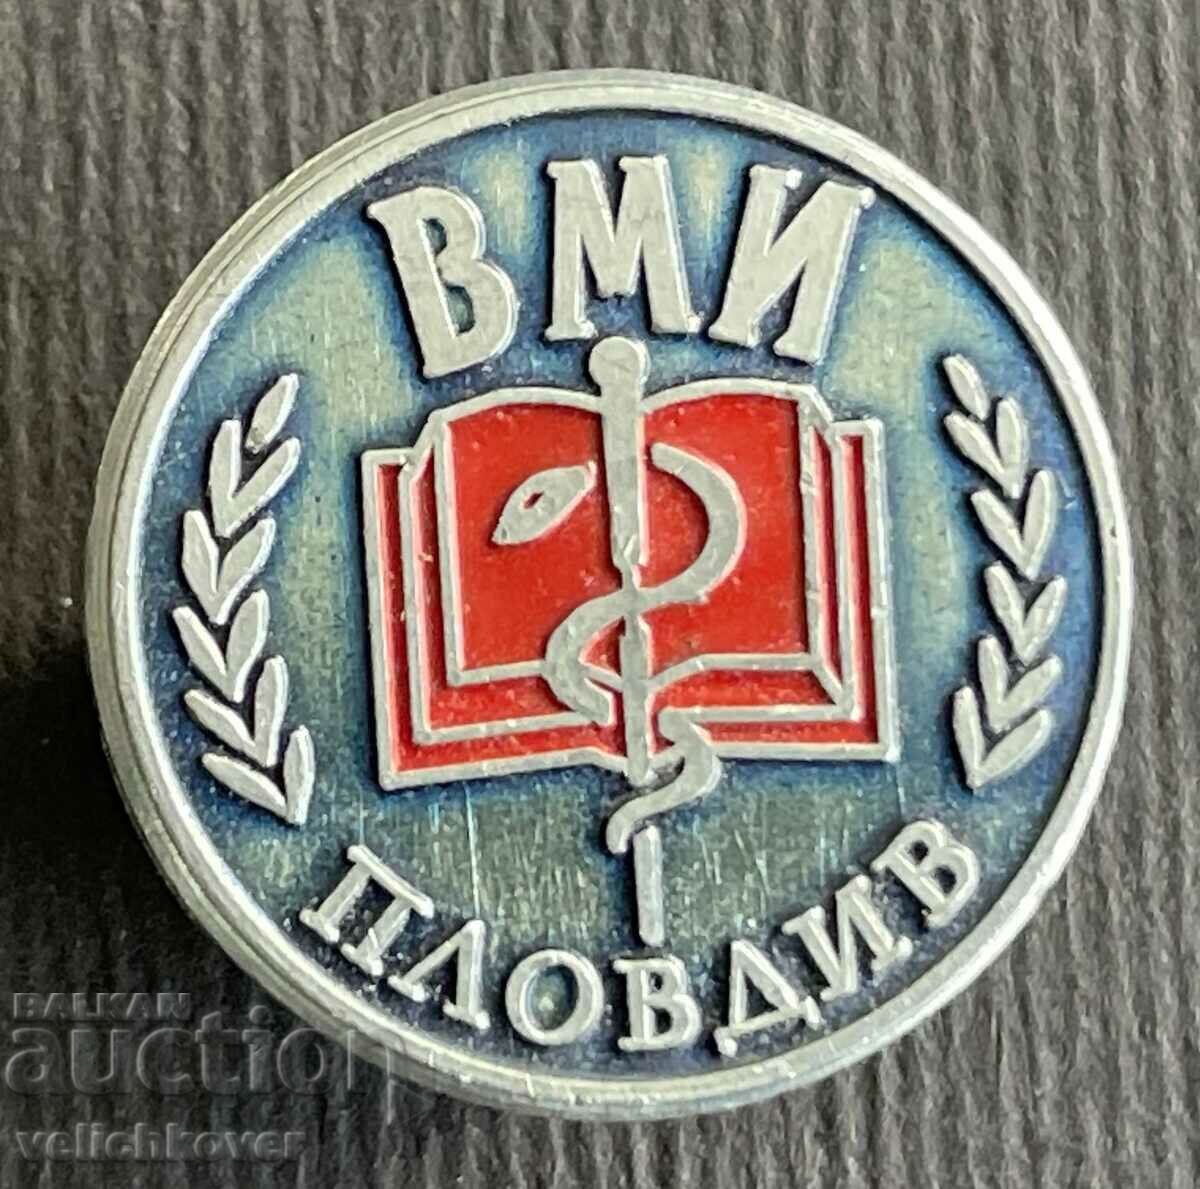 36967 Bulgaria sign VMI Higher Medical Institute Plovdiv